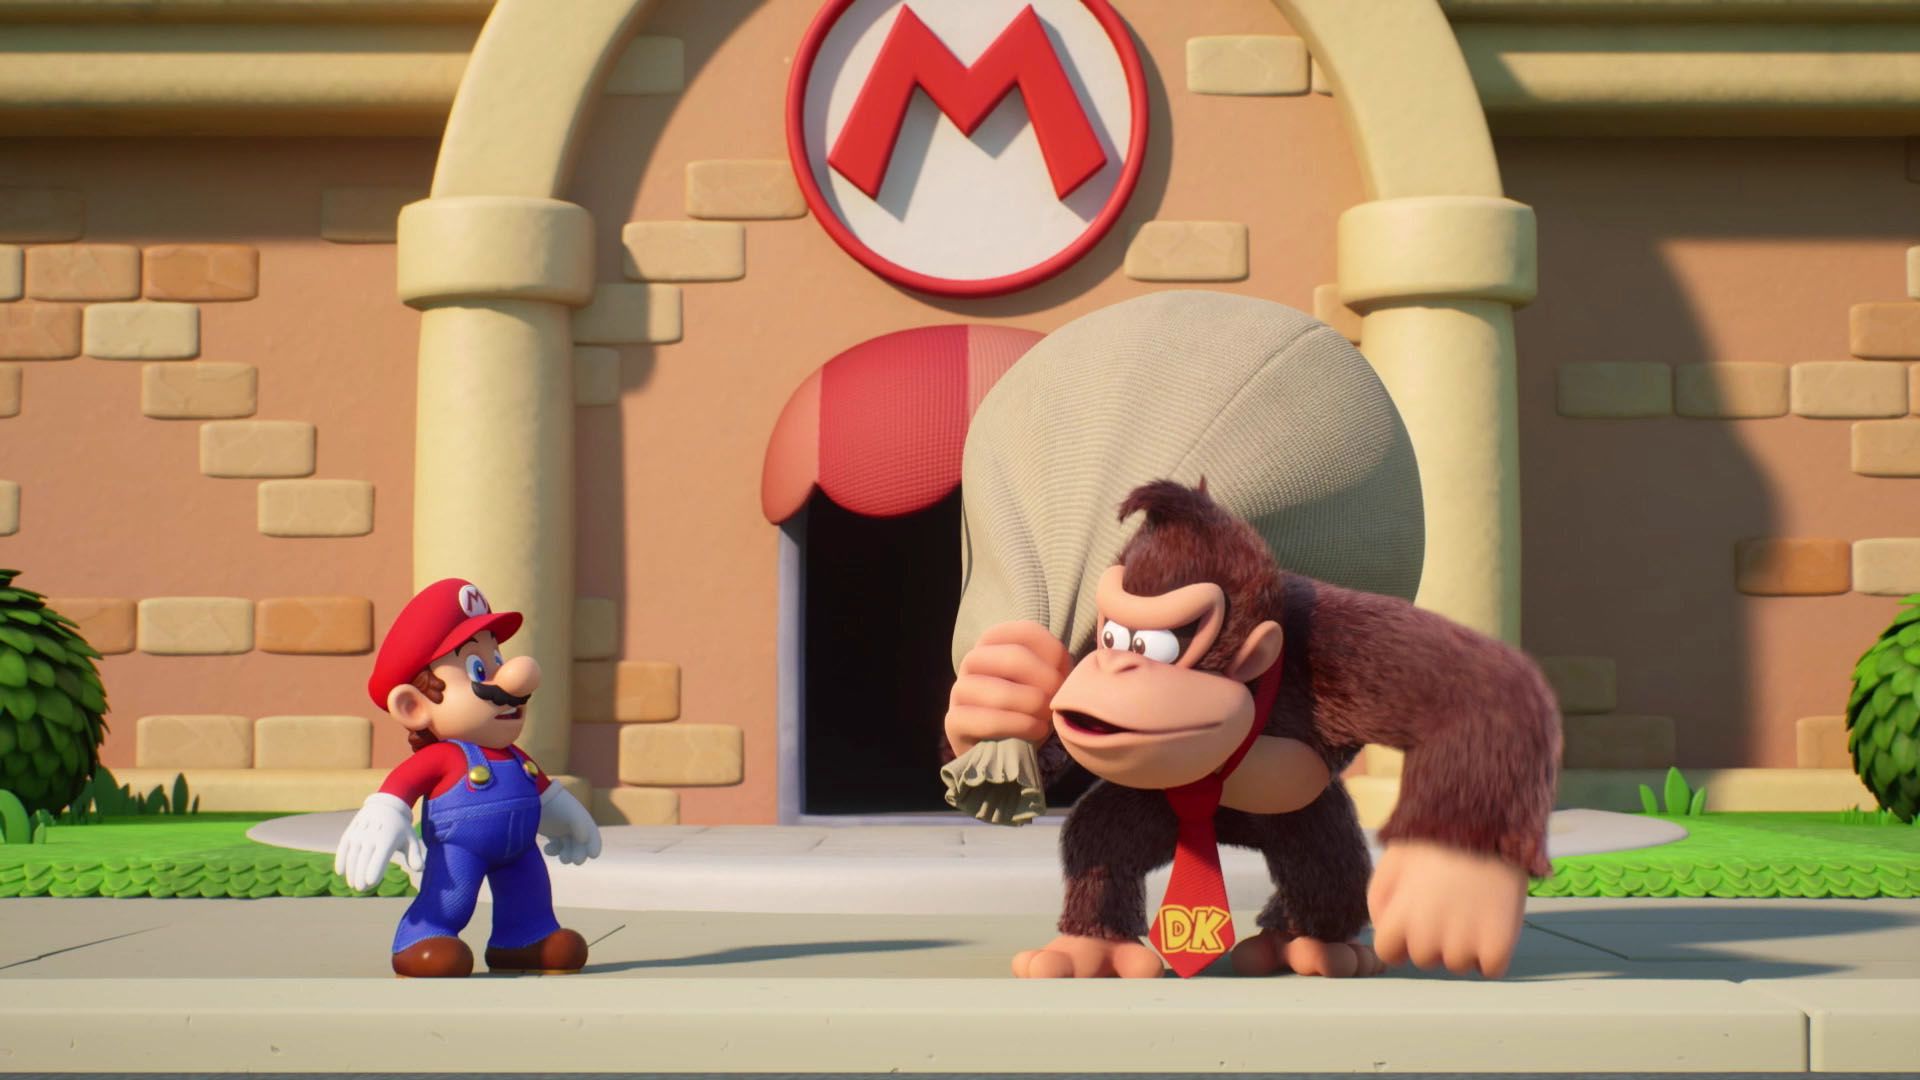 Mario guarda perplesso Donkey Kong, che ha un grande sacco sulla spalla, mentre si trova di fronte a un edificio con il logo di Mario. Onestamente sembra che Donkey Kong abbia appena rapinato Mario. È un'immagine da Mario vs. Donkey Kong